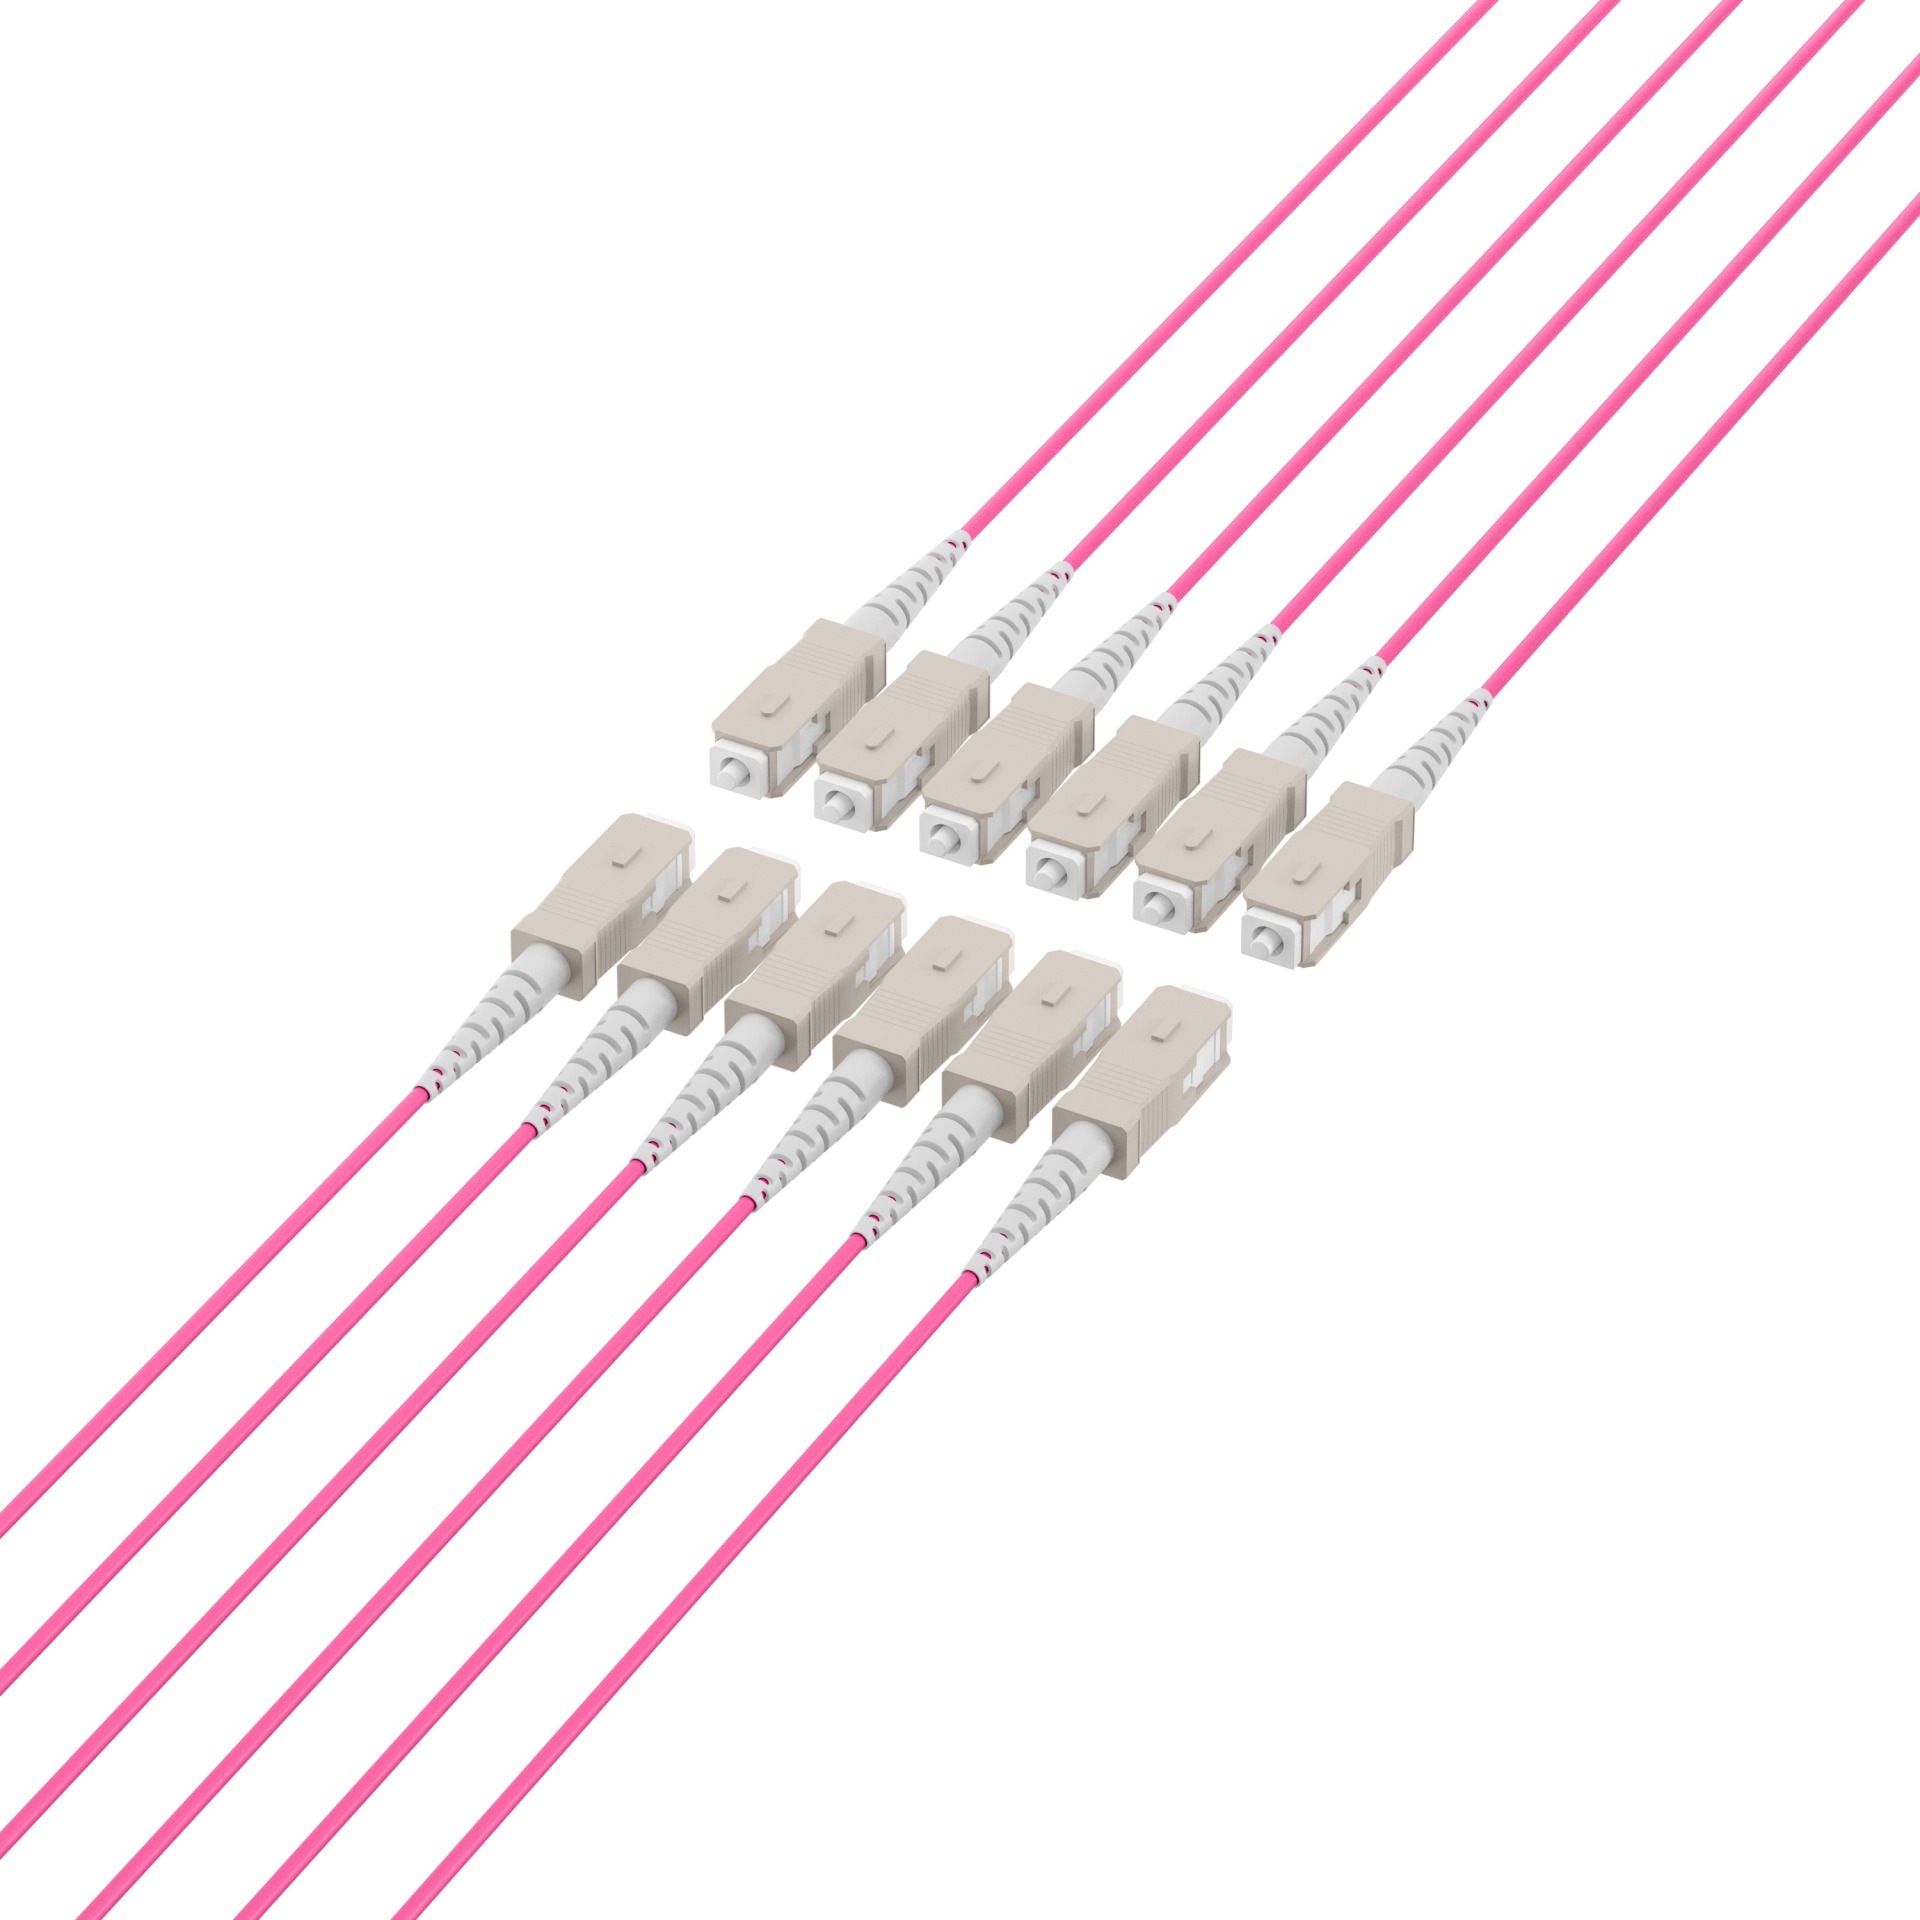 Trunk cable U-DQ(ZN)BH OM4 12G (1x12) SC-SC,200m Dca LSZH